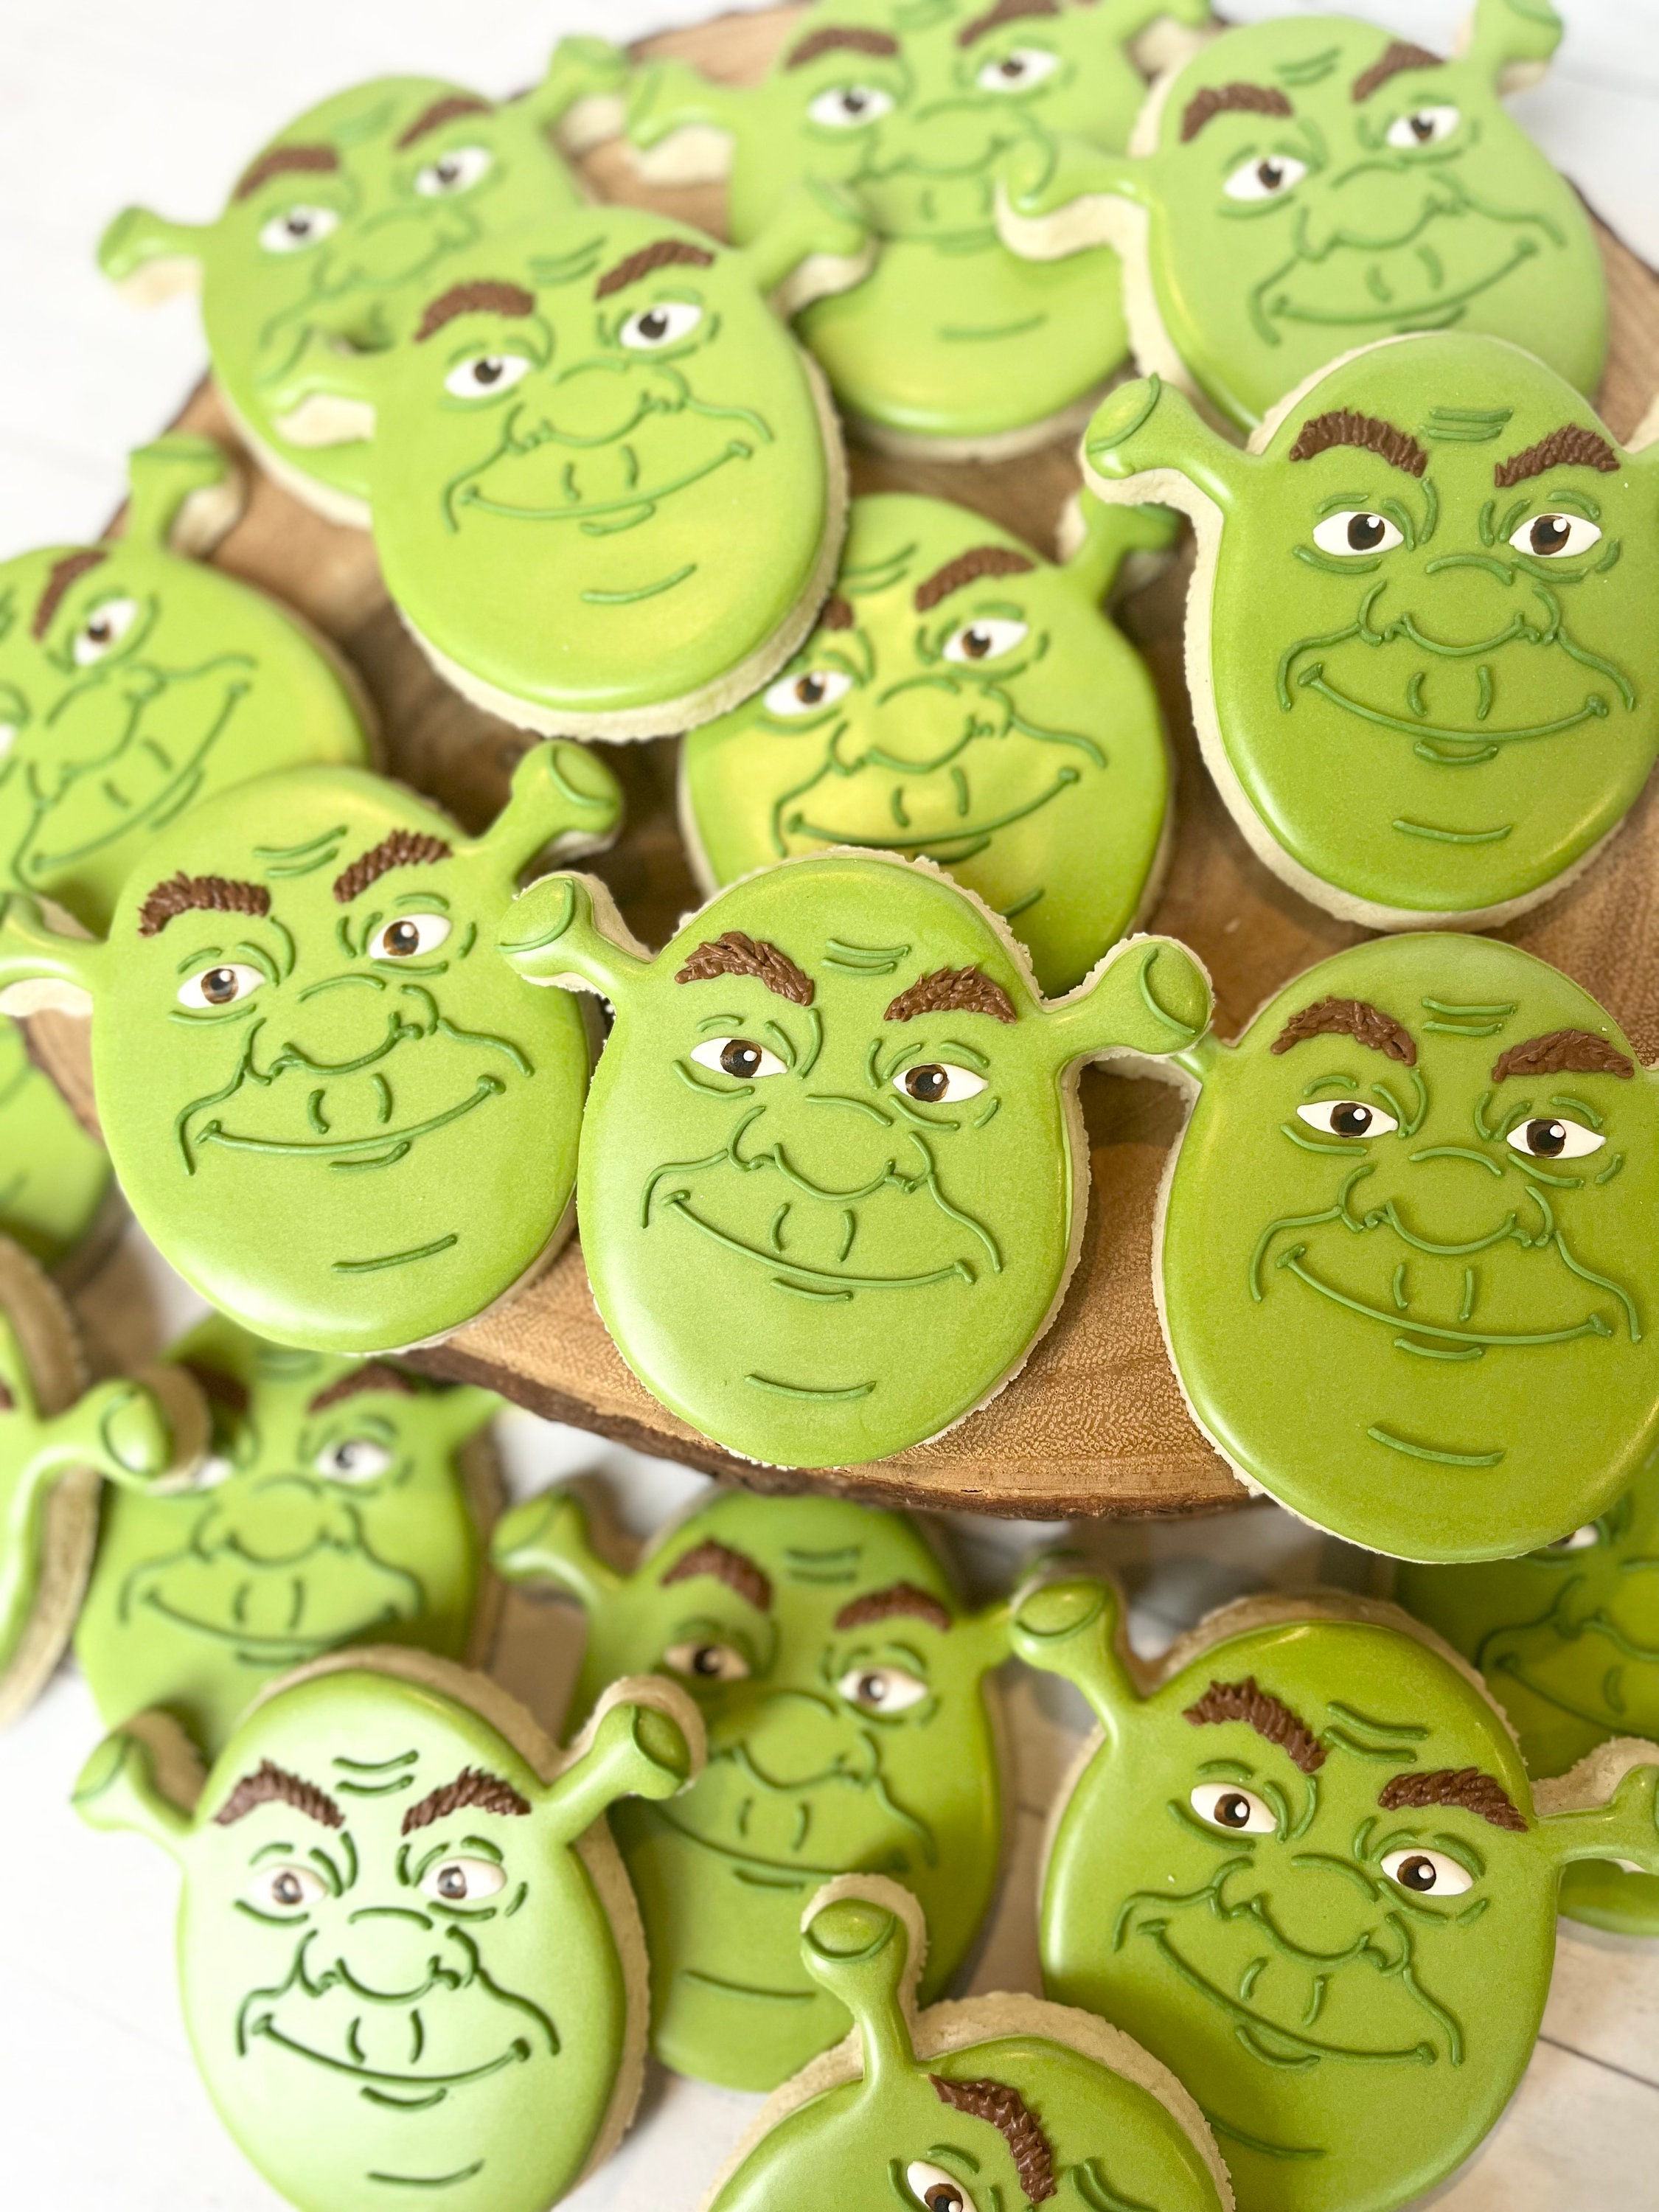 Cookie the Ogre  Shrek character, Shrek, Ogre